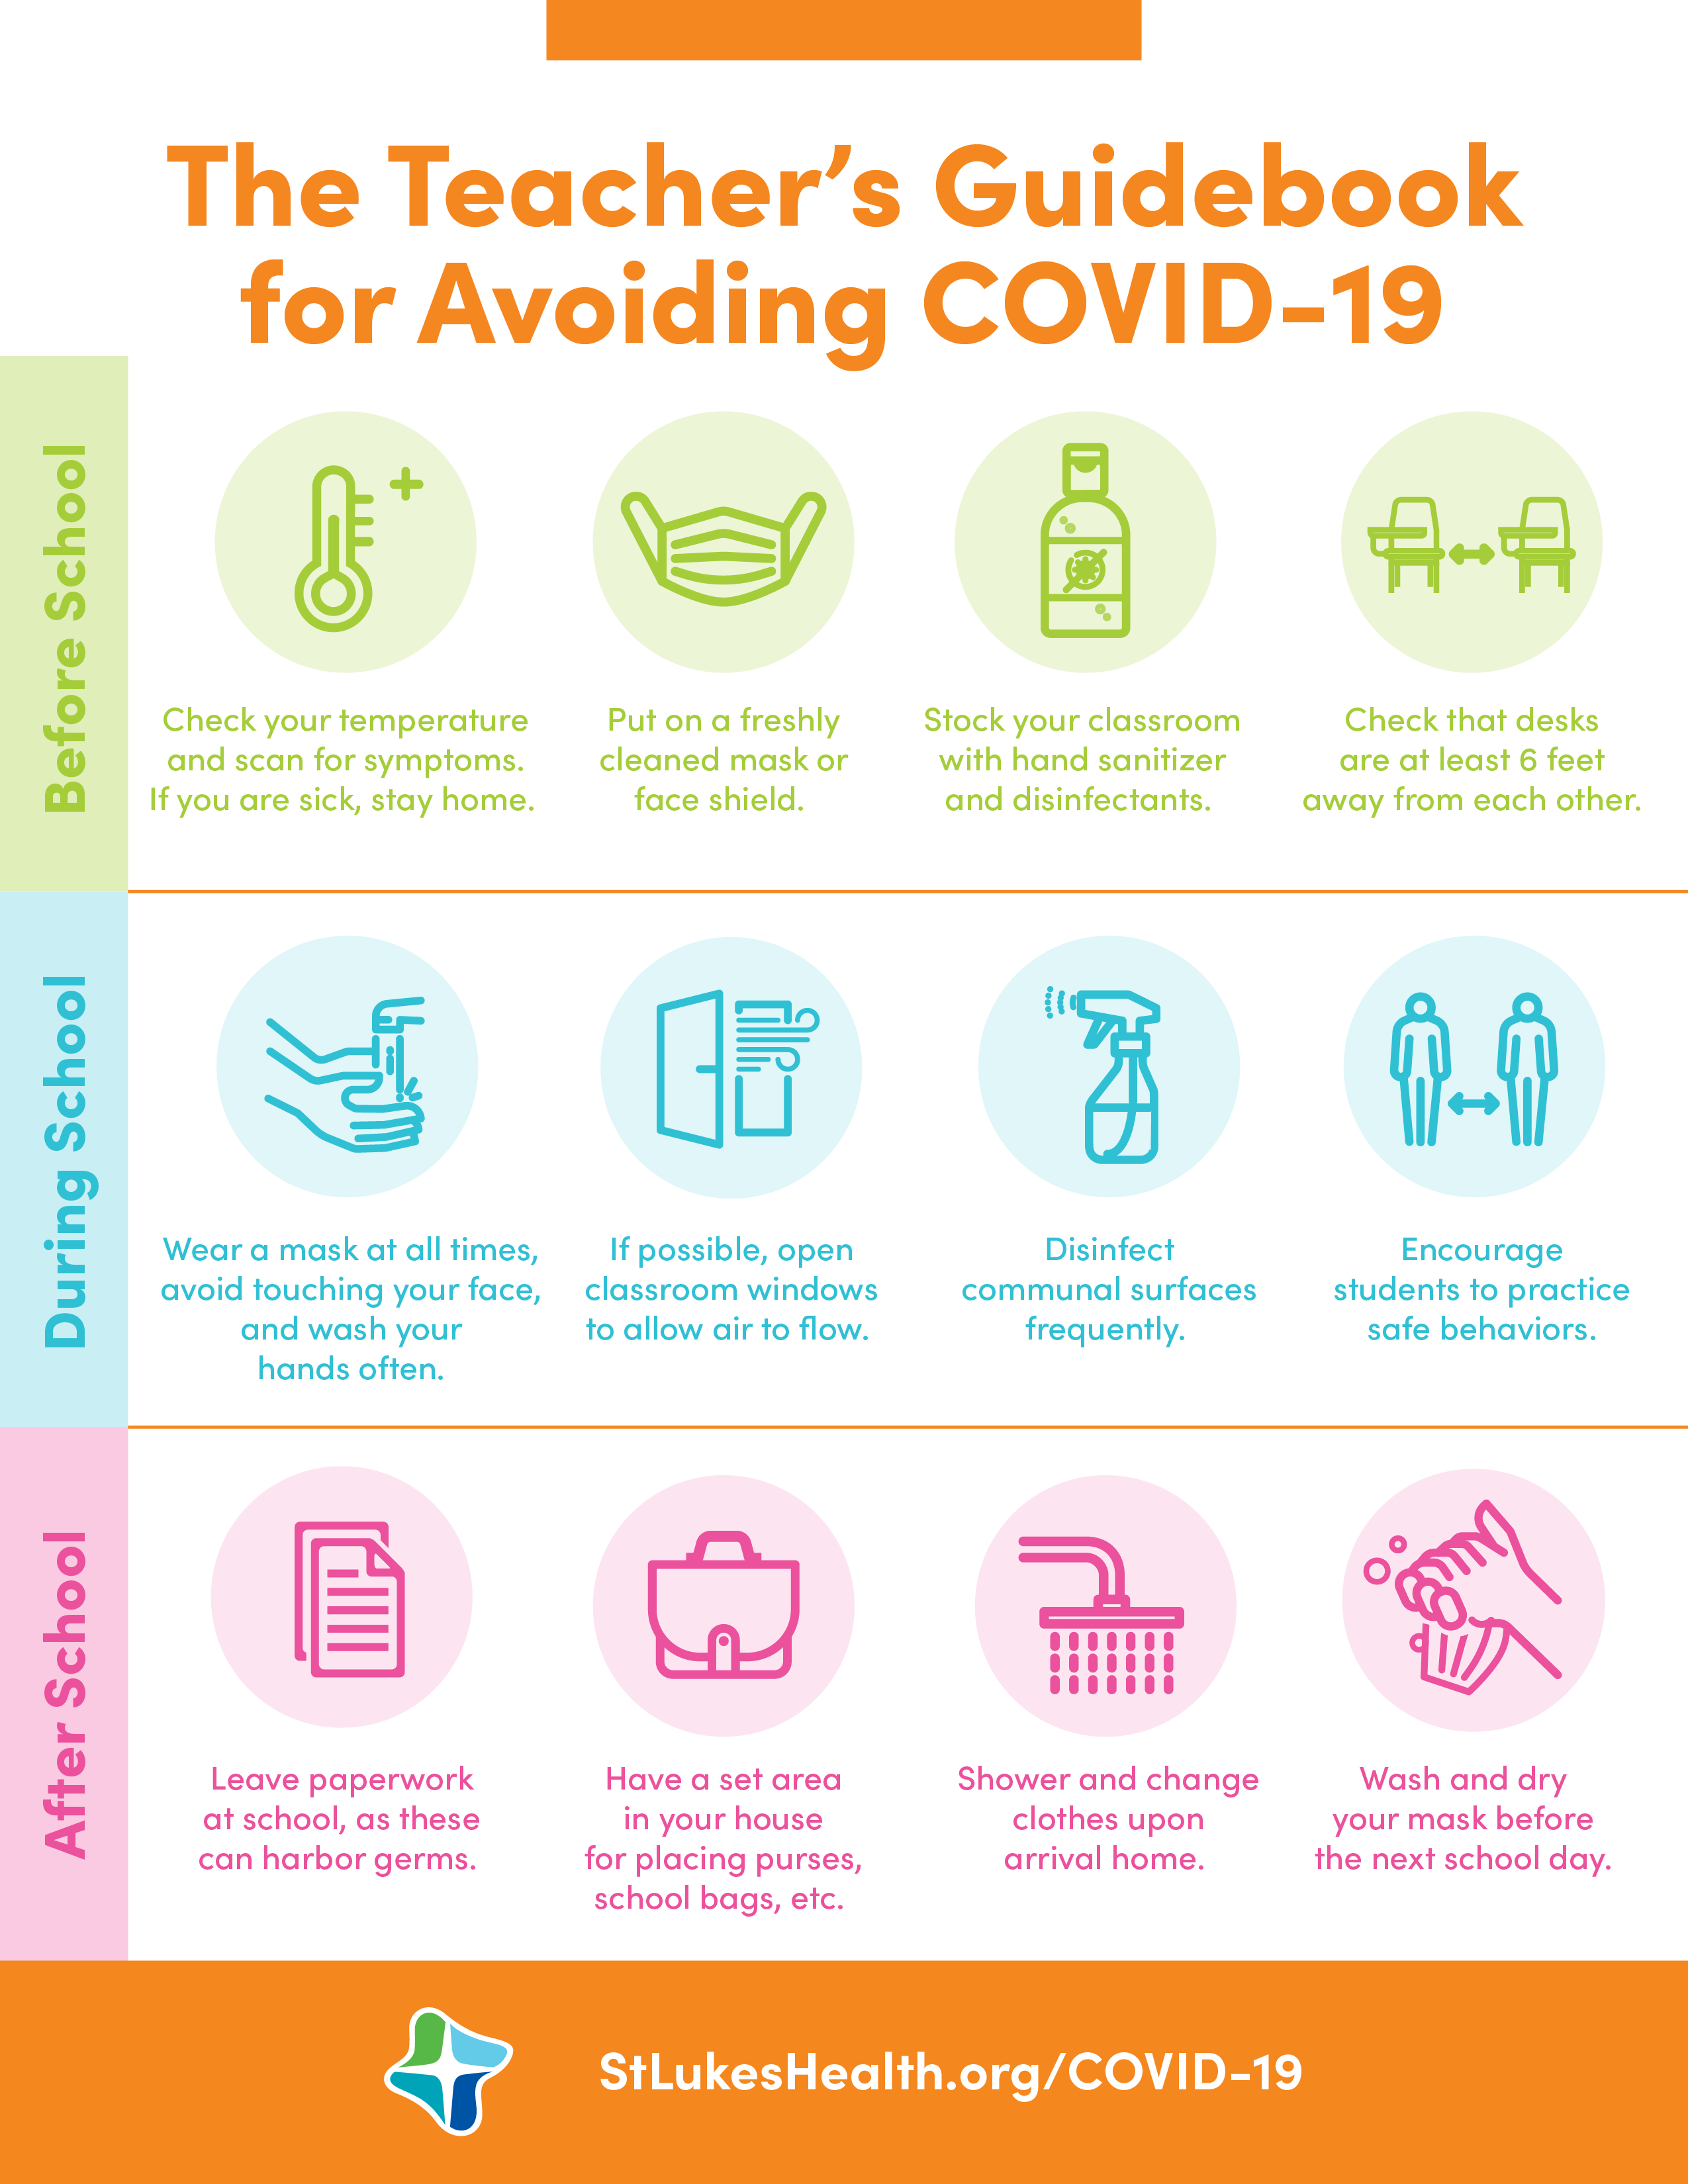 The Teacher's Guidebook for Avoiding COVID-19